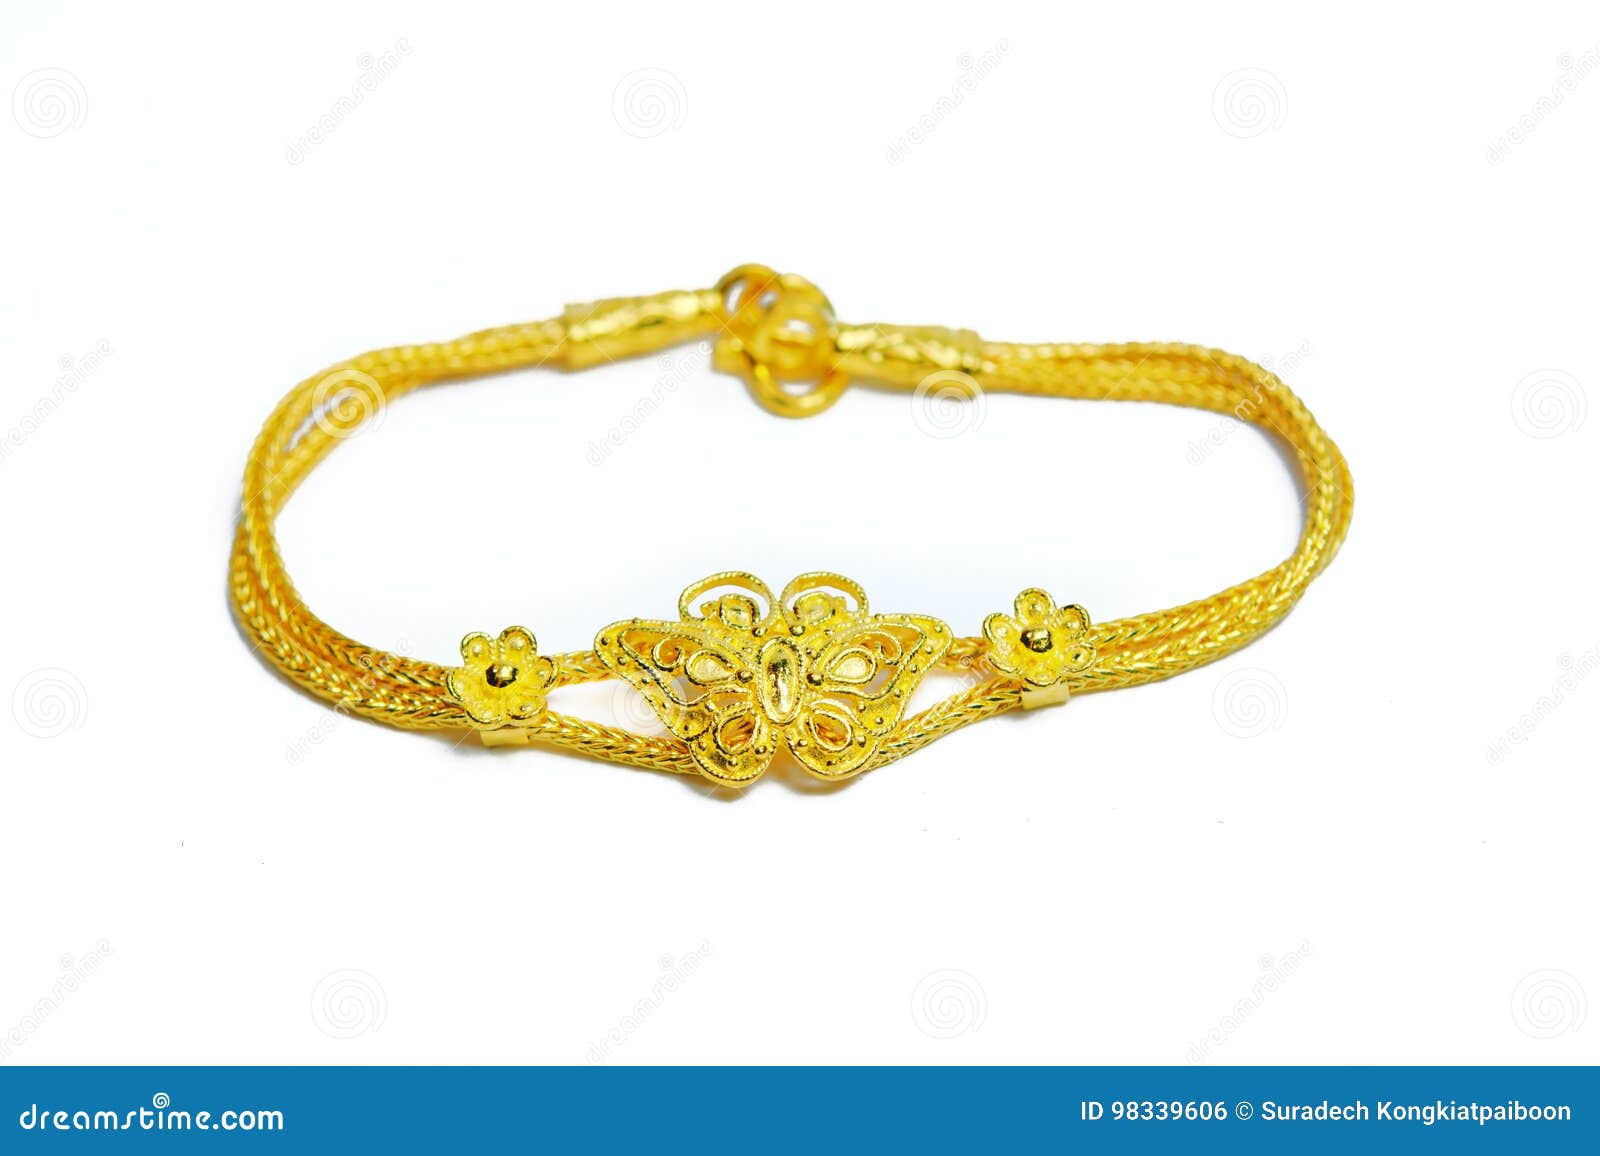 gold bracelet  on white